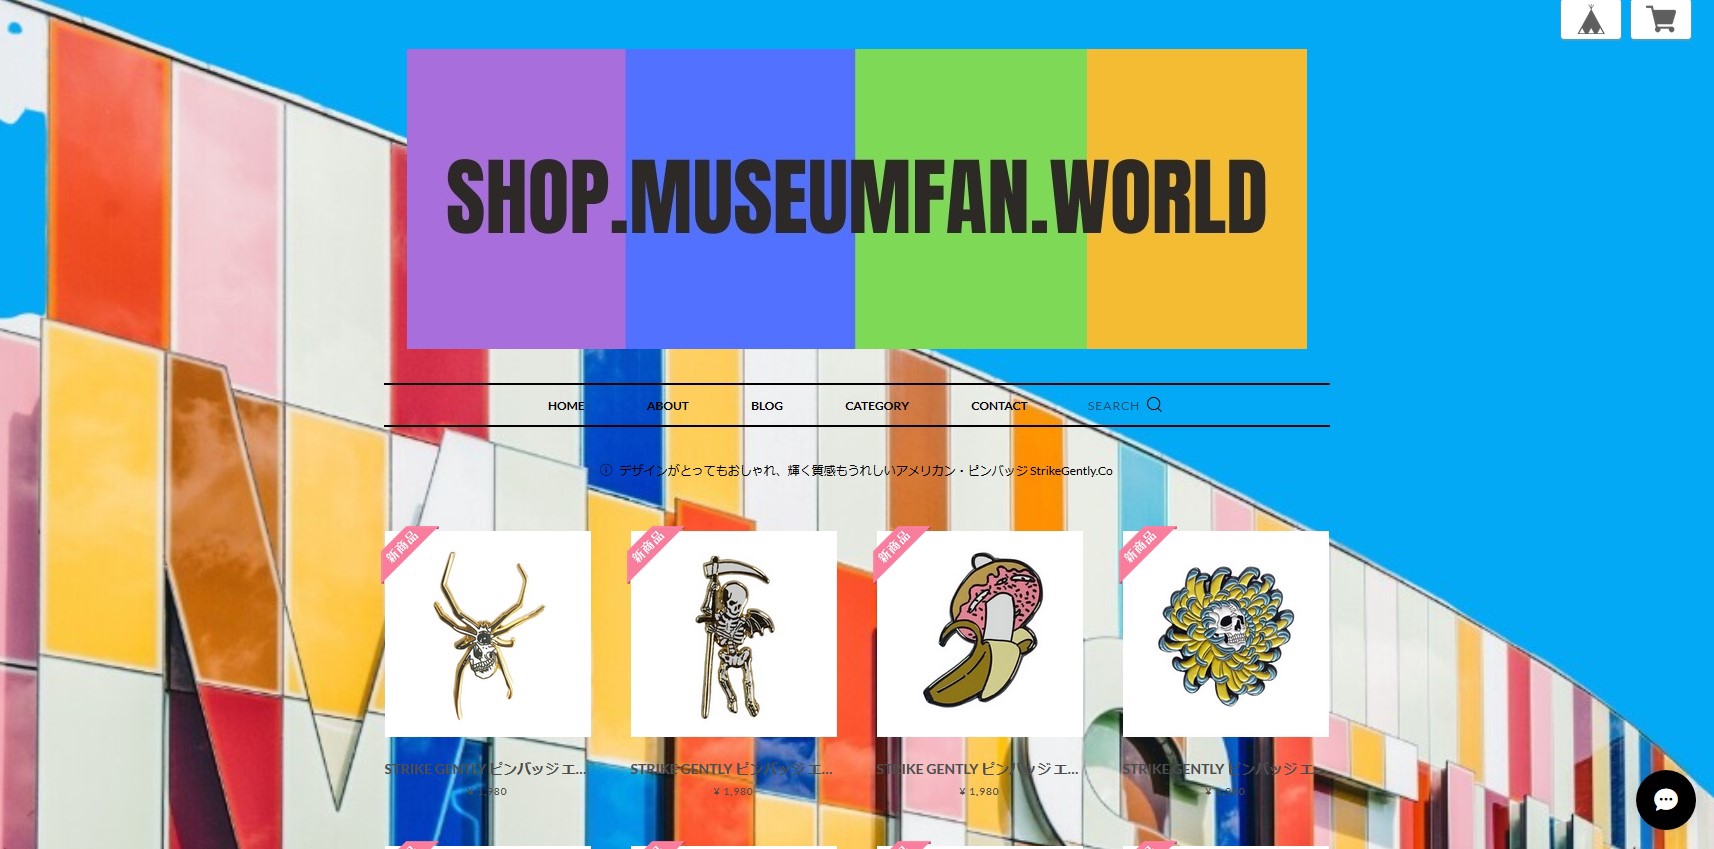 世界のピンバッジや楽しいアート商品の「MUSEUMFAN.WORLD」」 | ARTiFY